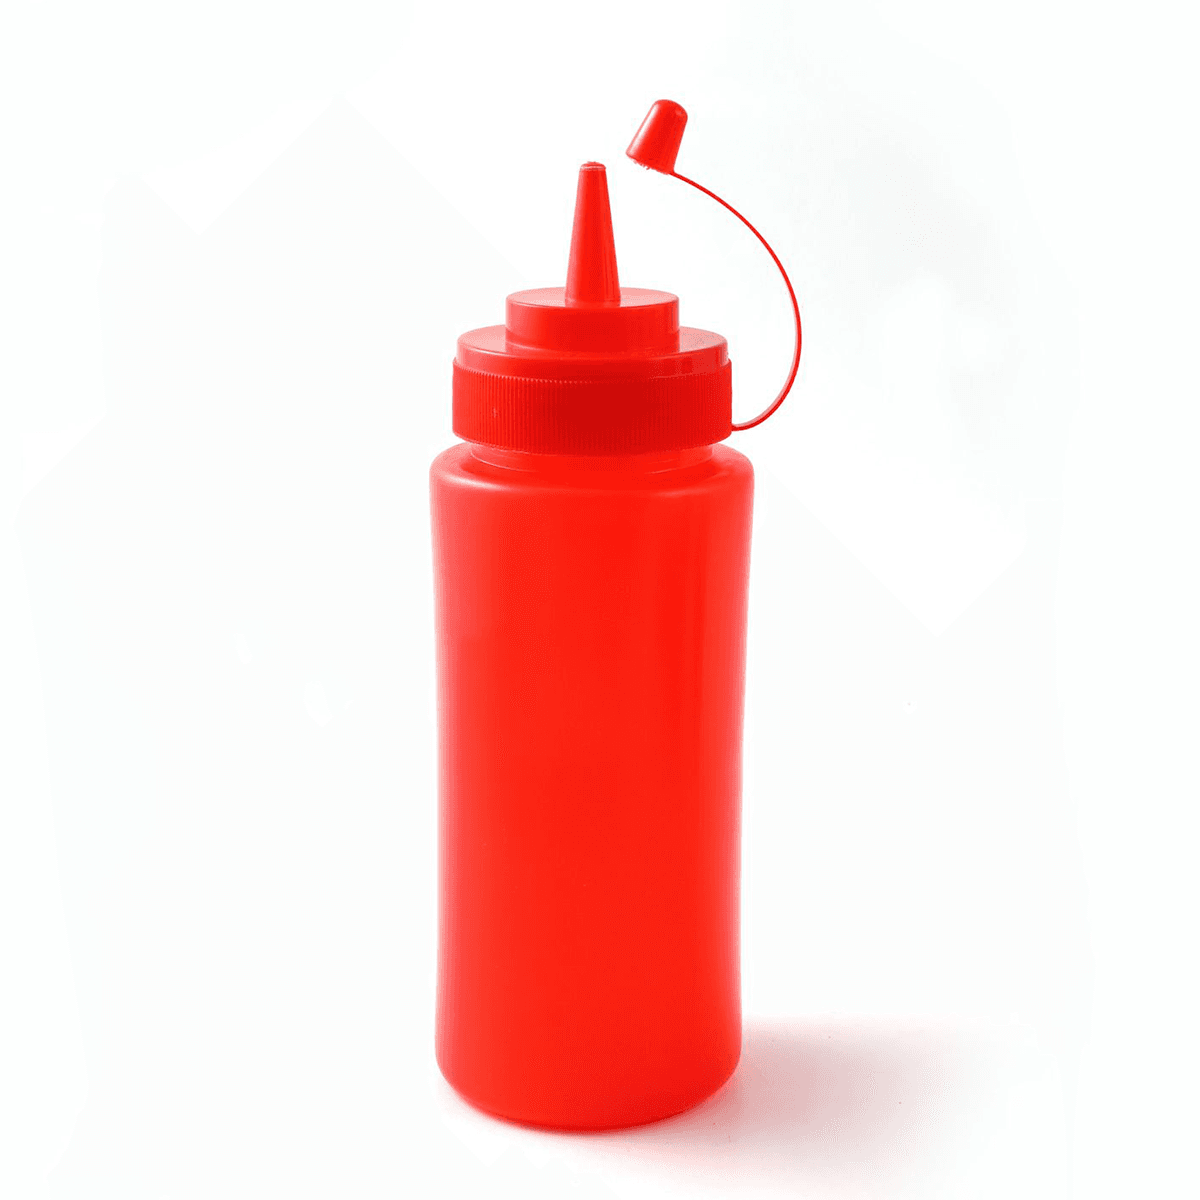 سكويزر 450 مل مع غطاء بلاستيك أحمر Plastic 450 ml Sqeezer Red with Lid Red